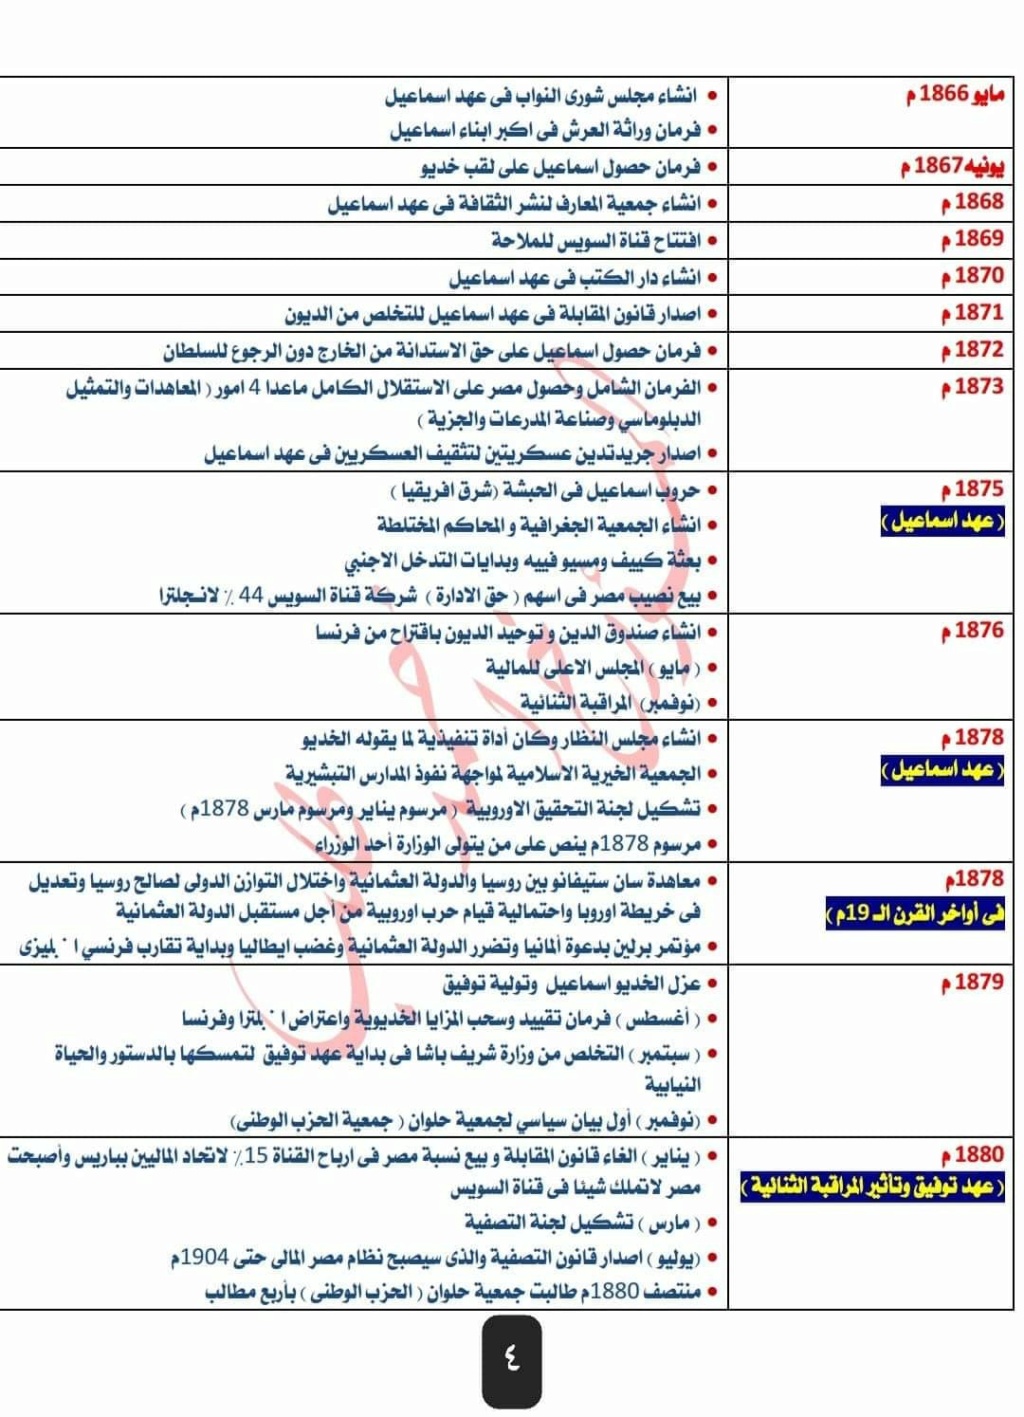 تواريخ منهج ثالثة ثانوي بالترتيب الزمني و قائمة حكام مصر بالترتيب  449